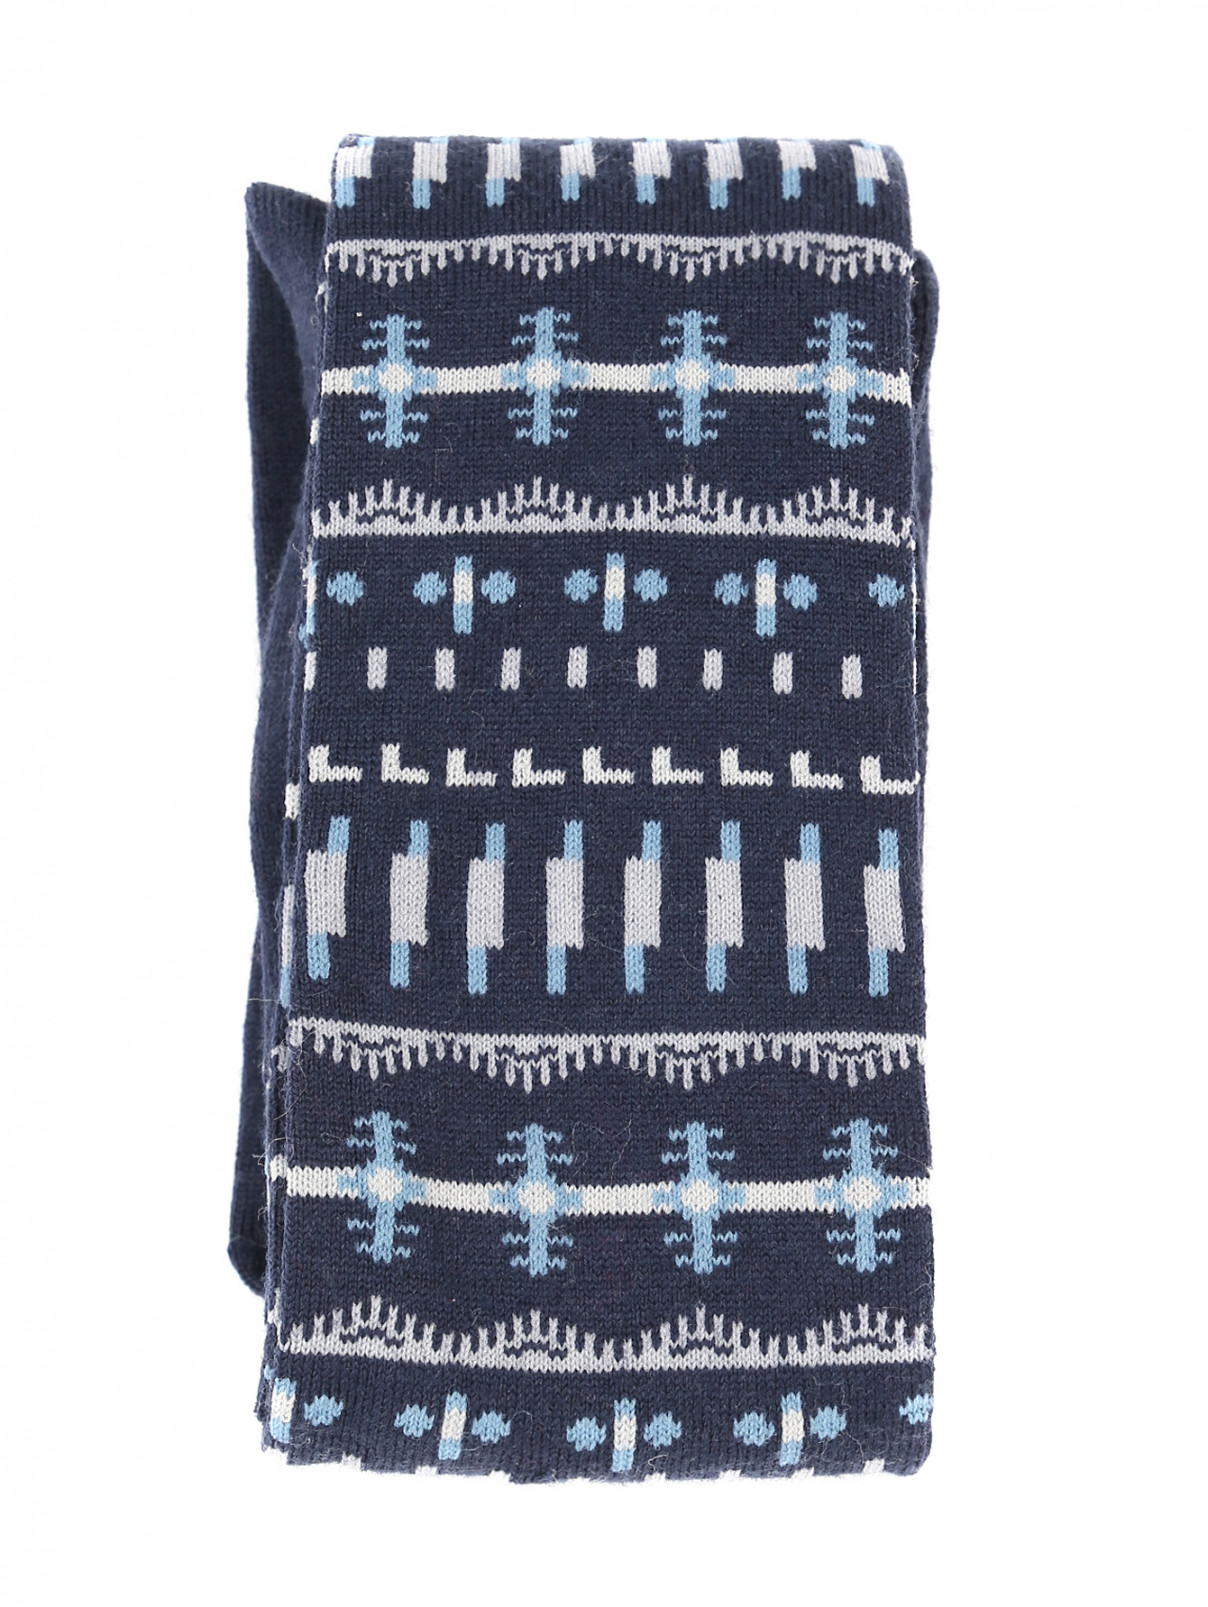 Колготки из смешанной шерсти с орнаментом Falke  –  Общий вид  – Цвет:  Синий